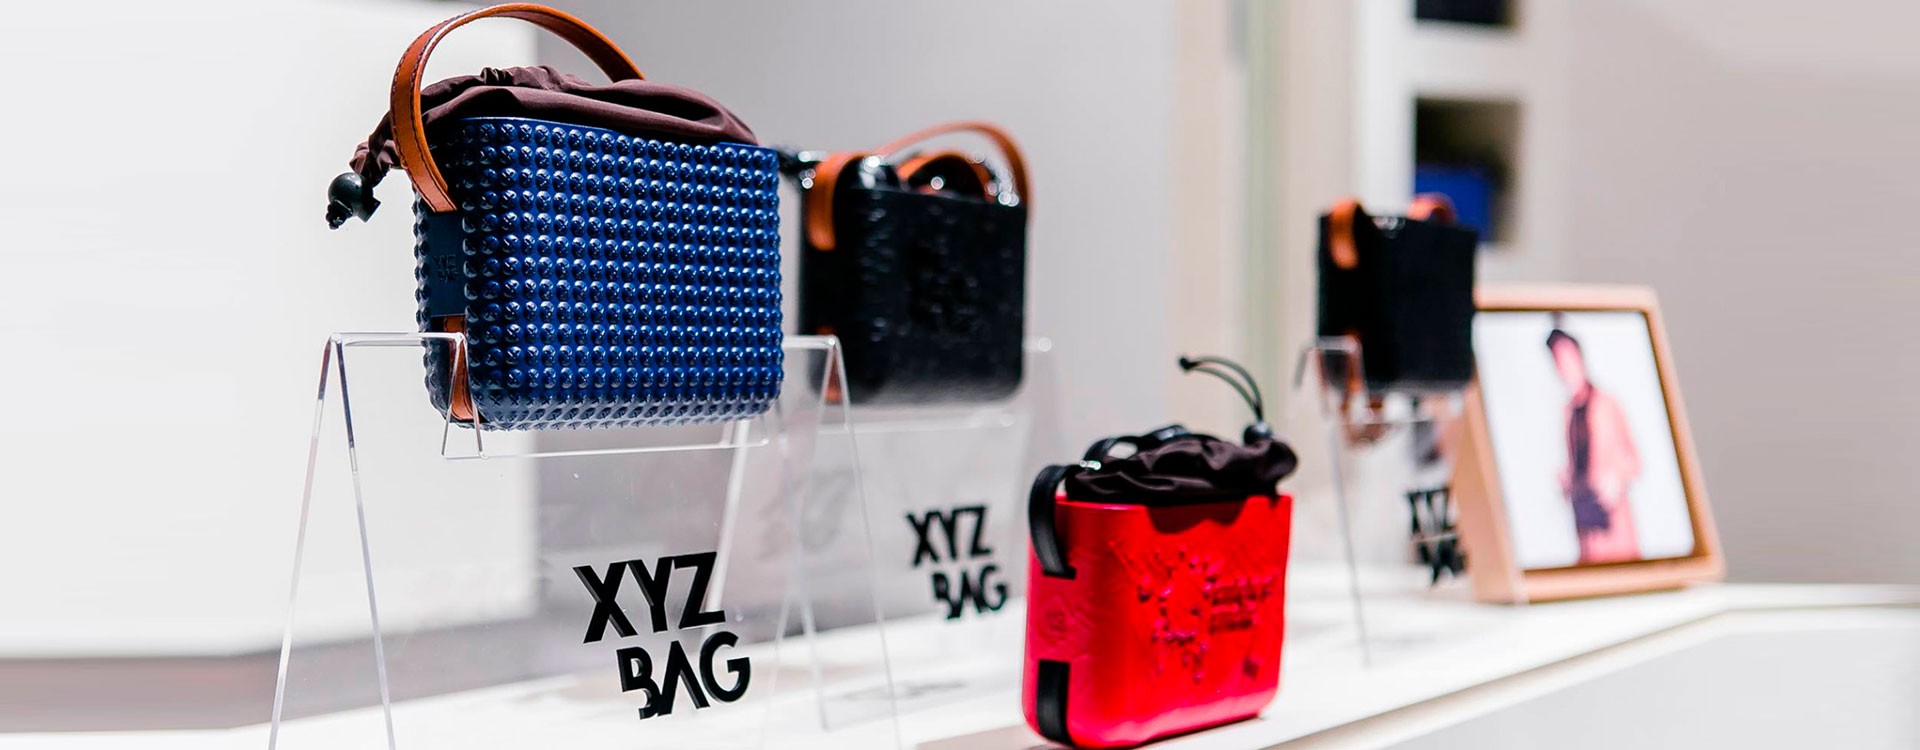 Итальянский бренд XYZbag создает уникальные сумки при помощи 3D печати